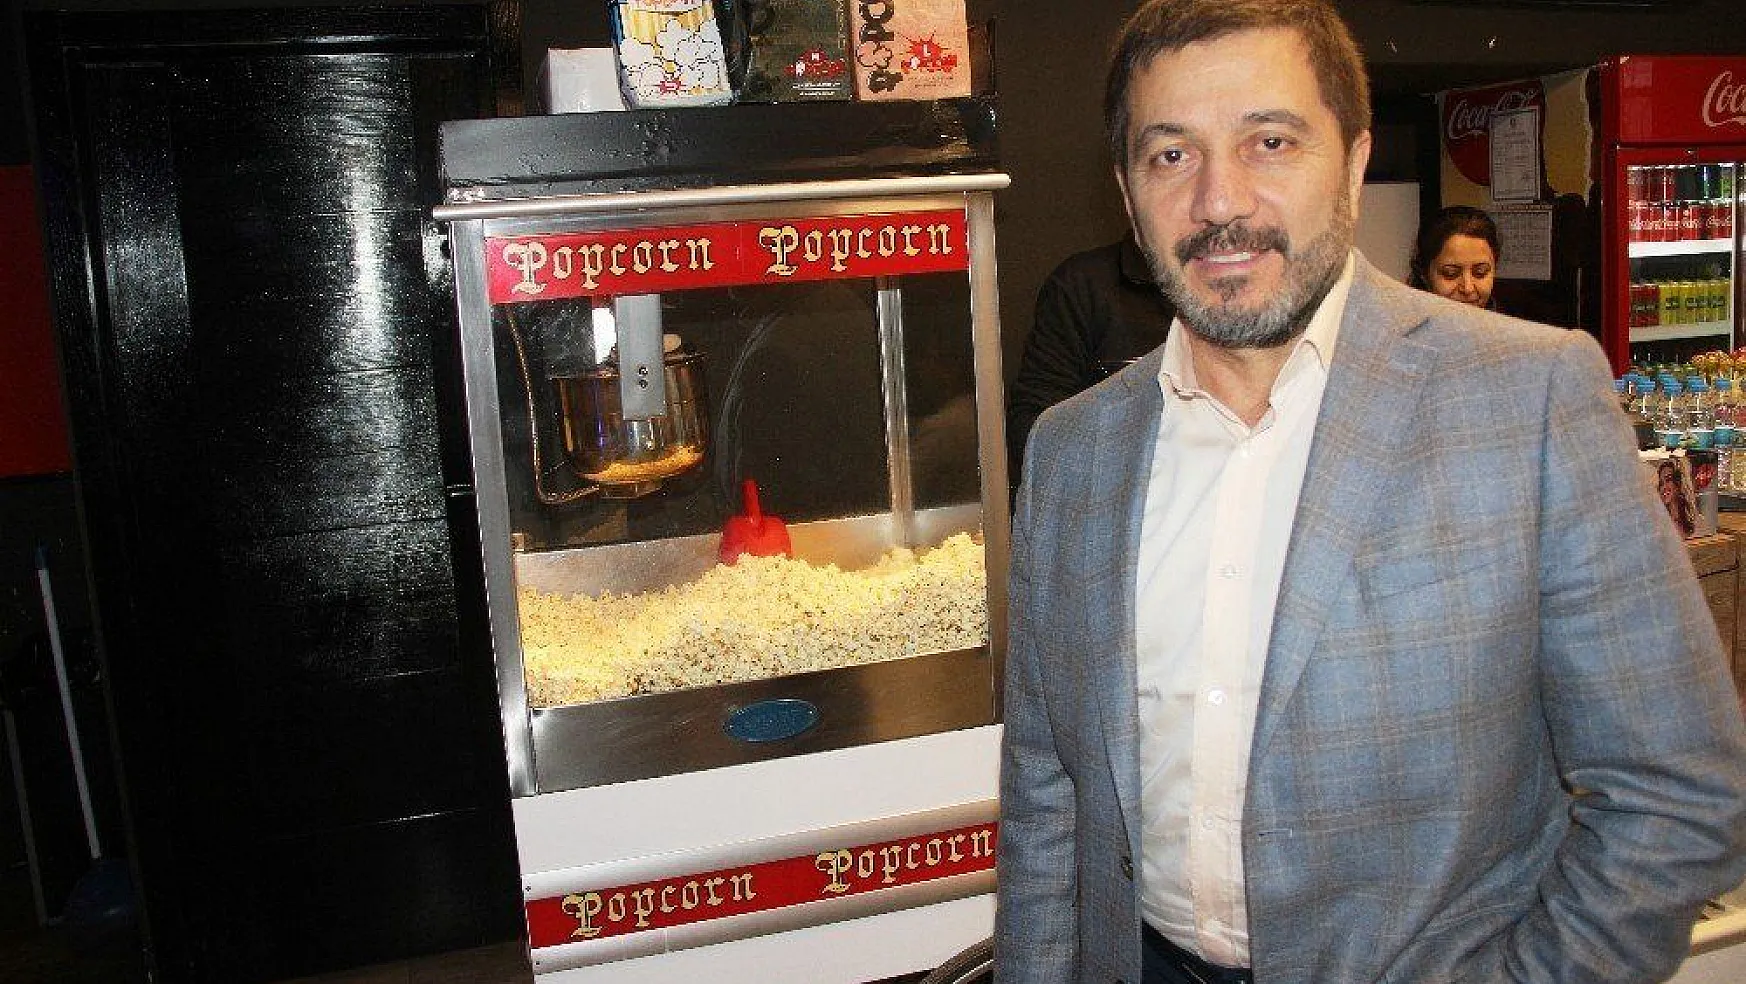 Kola, patlamış mısır ve sinema bileti kampanyası yapanlara ceza yağacak